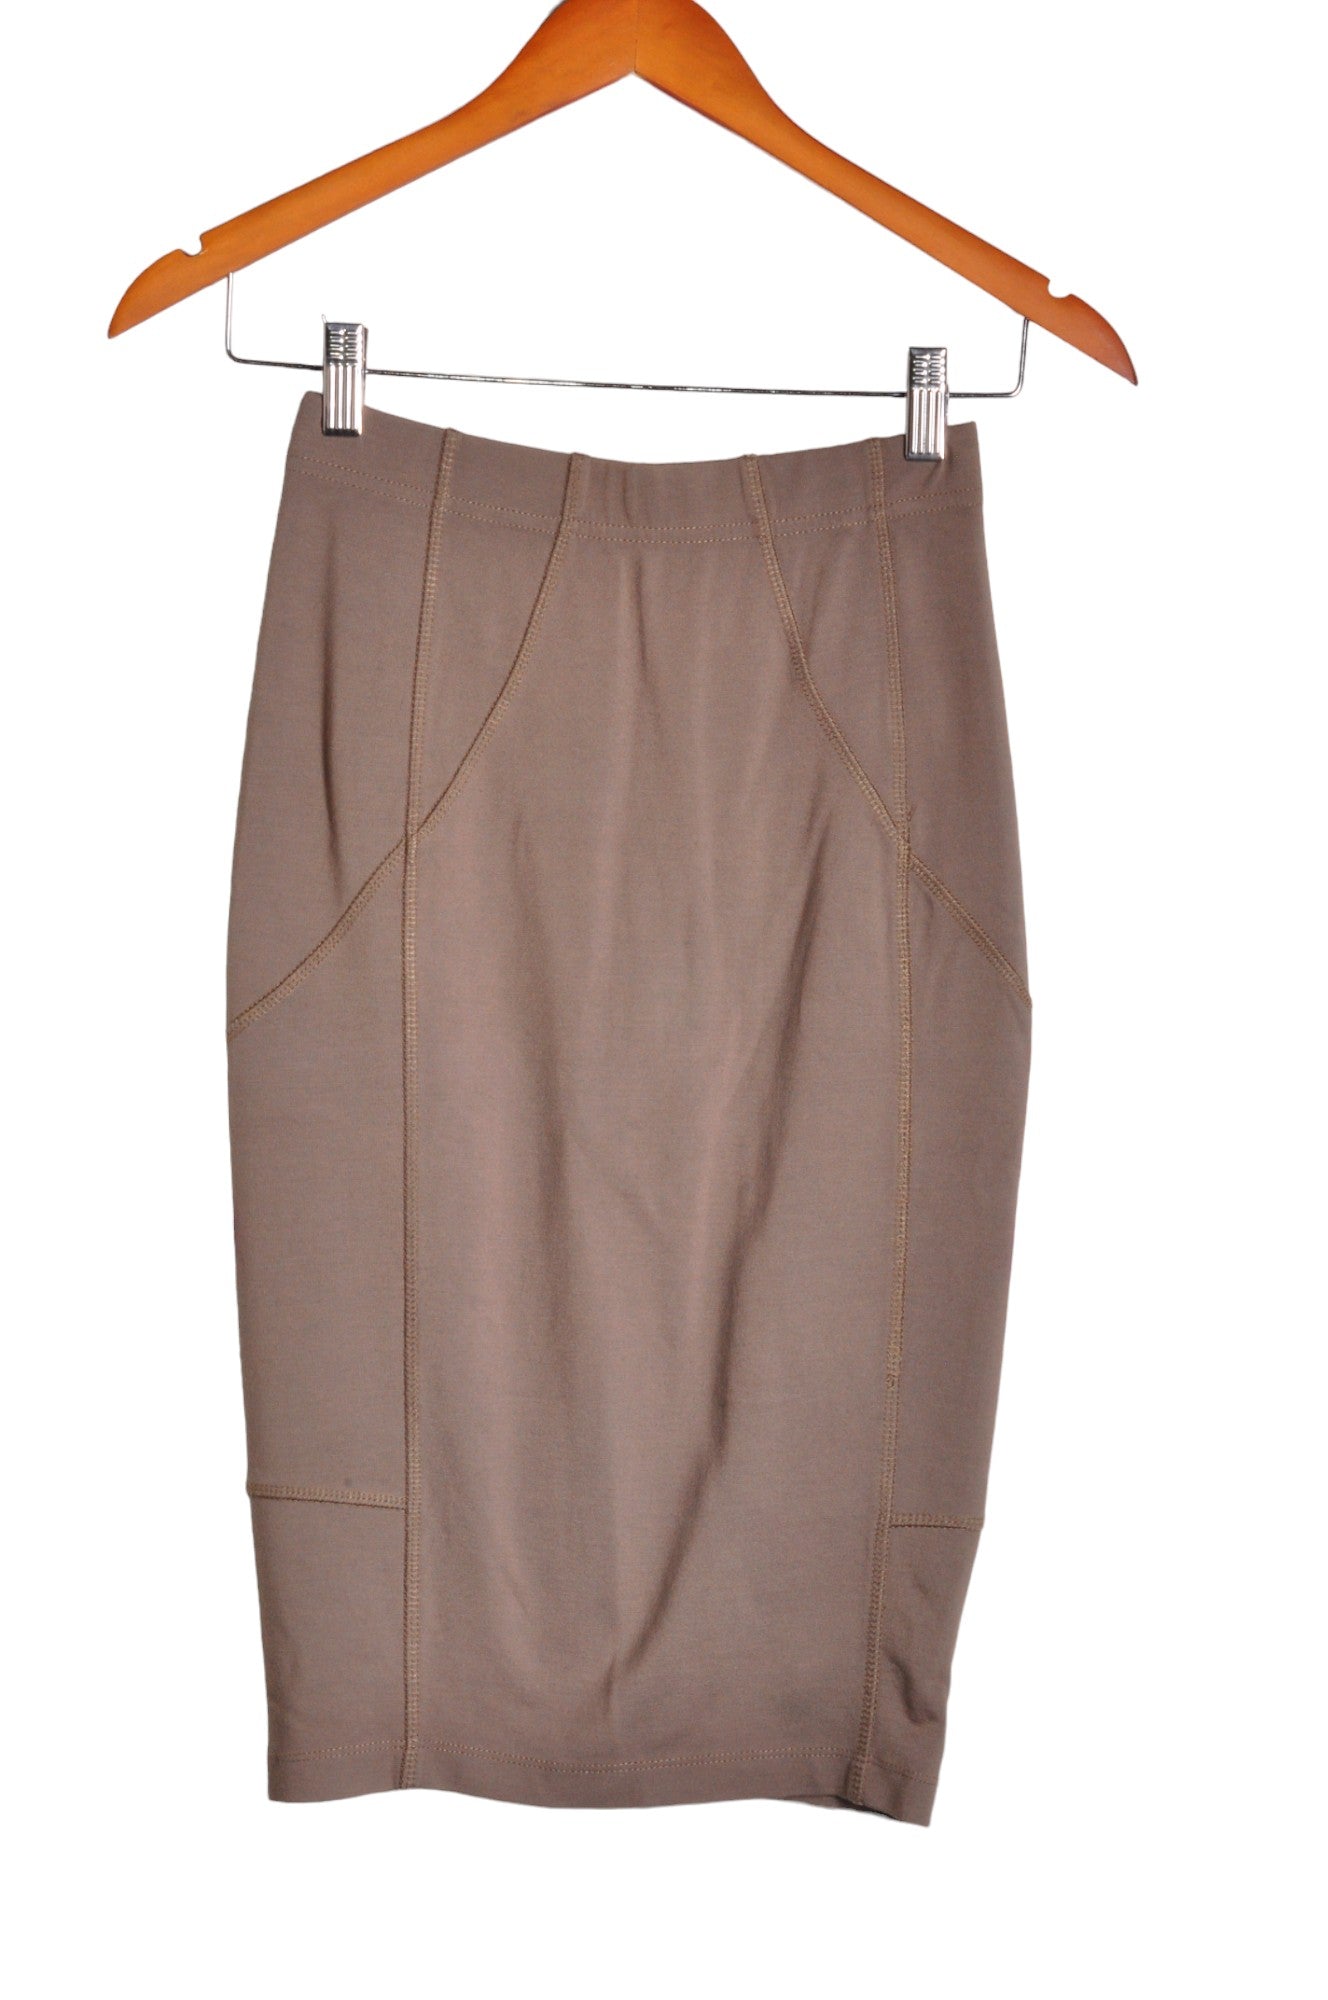 COSTA BLANCA Women Pencil Skirts Regular fit in Beige - Size XS | 13.25 $ KOOP